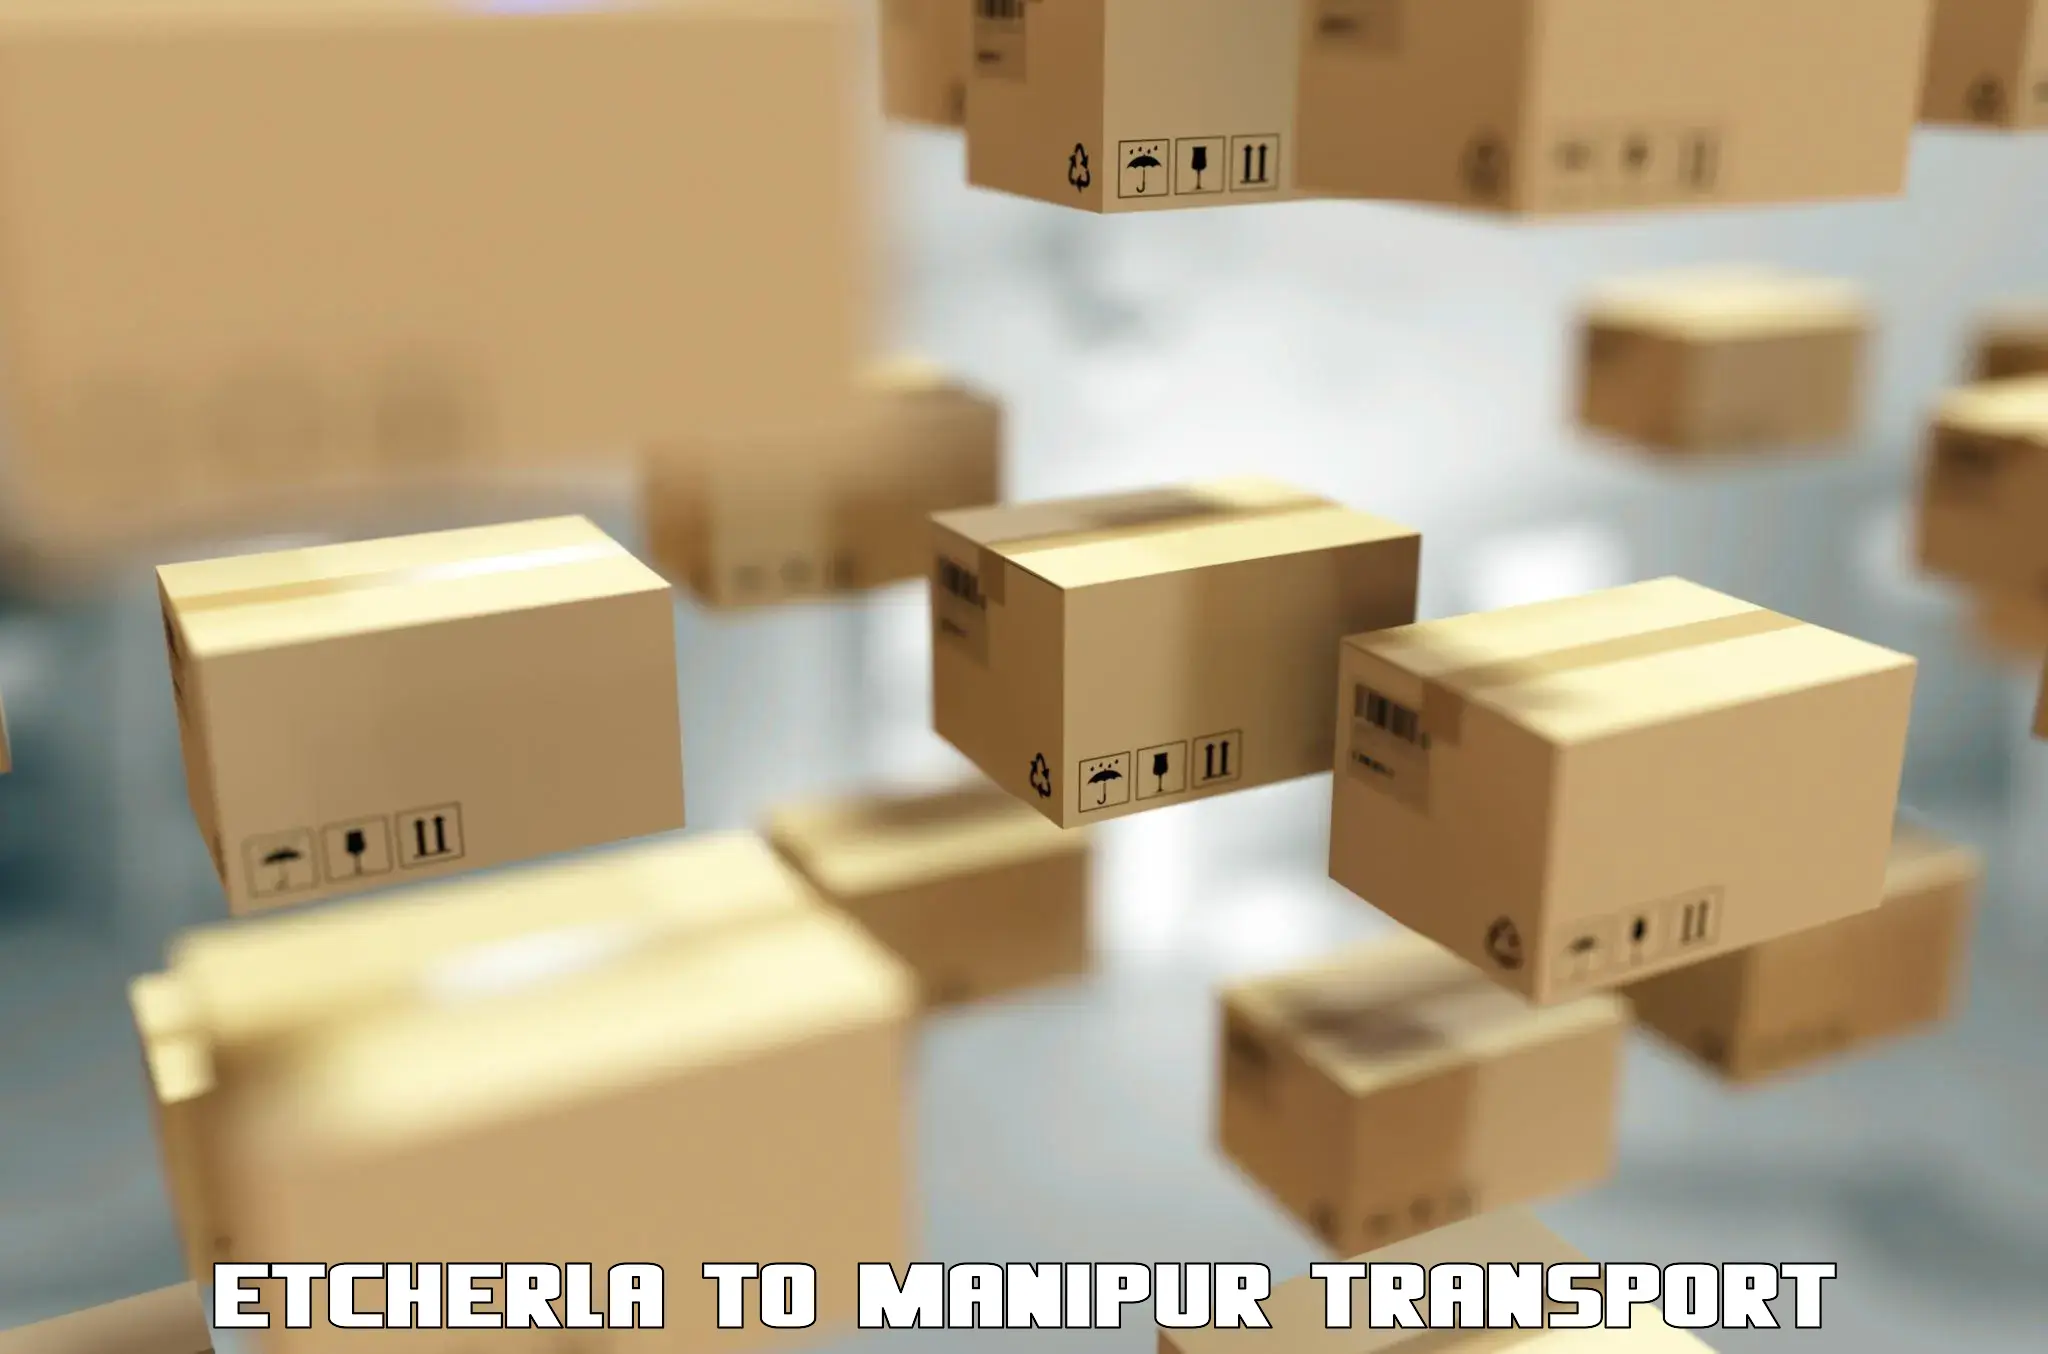 Transportation services in Etcherla to Churachandpur